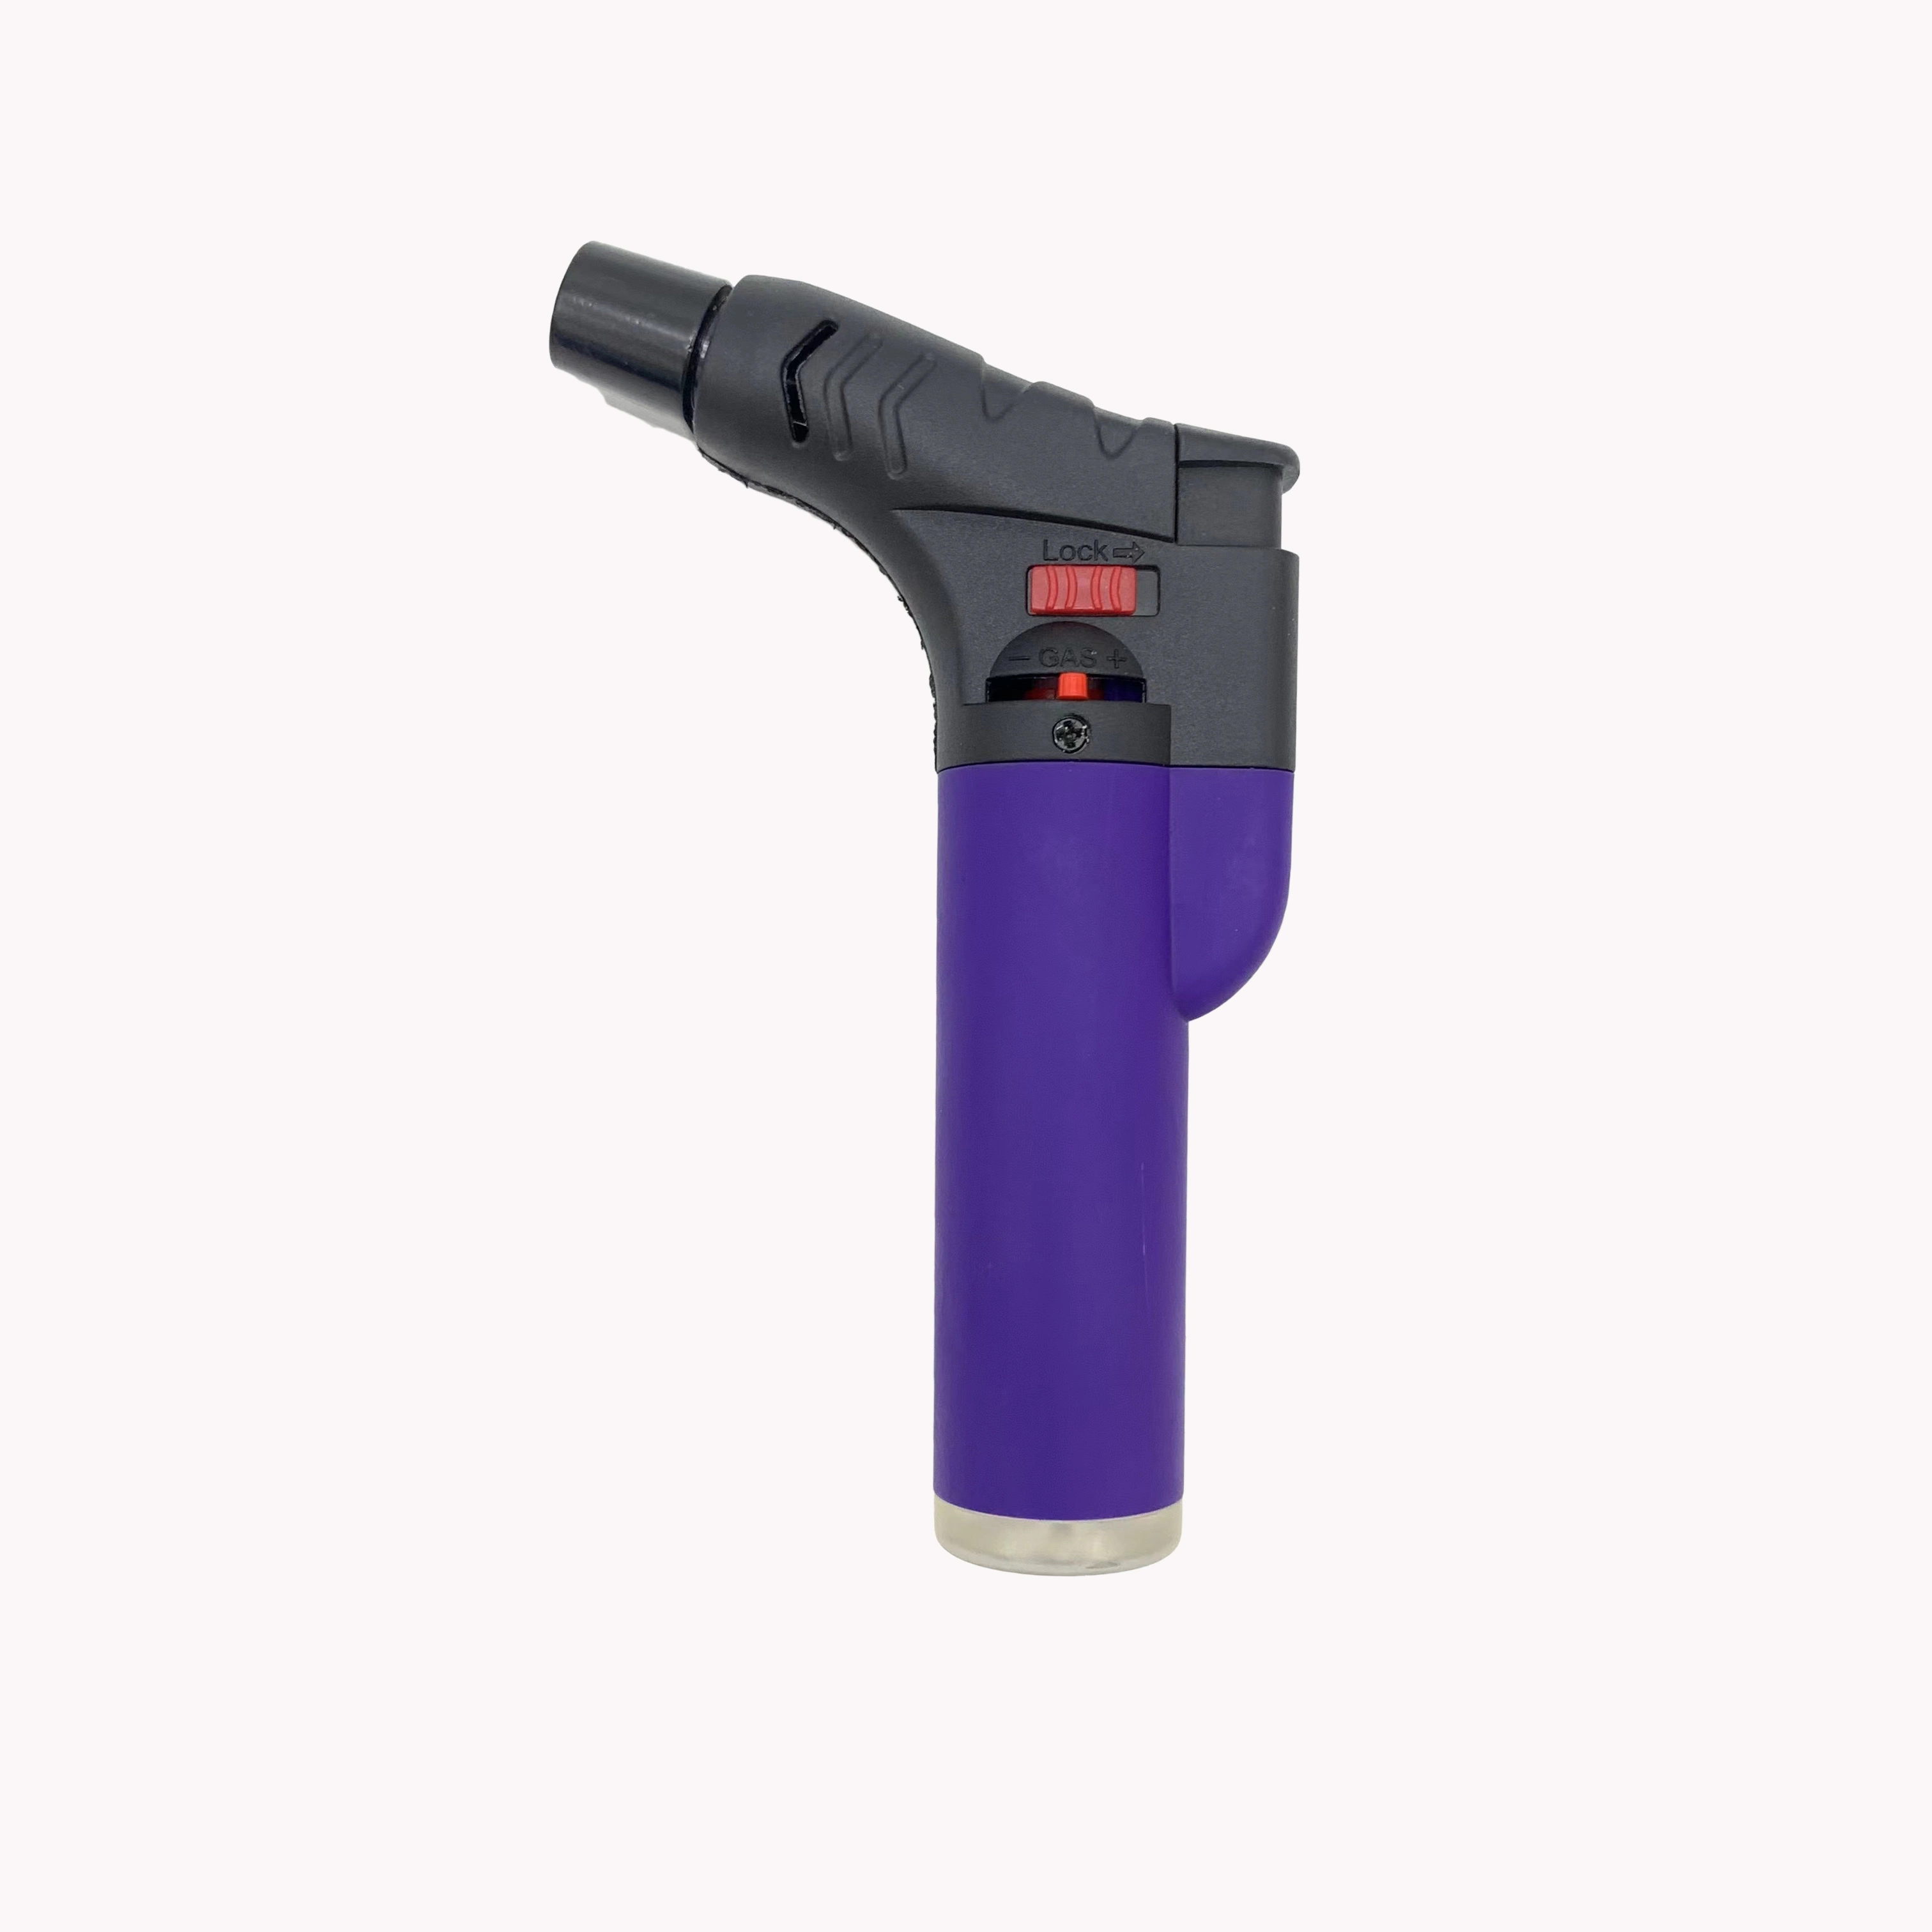 Isqueiros personalizado Fornecedor de fábrica de tabaco Kkk tem proteção contra o cigarro mais leve mini-Ray Gun Torch isqueiro